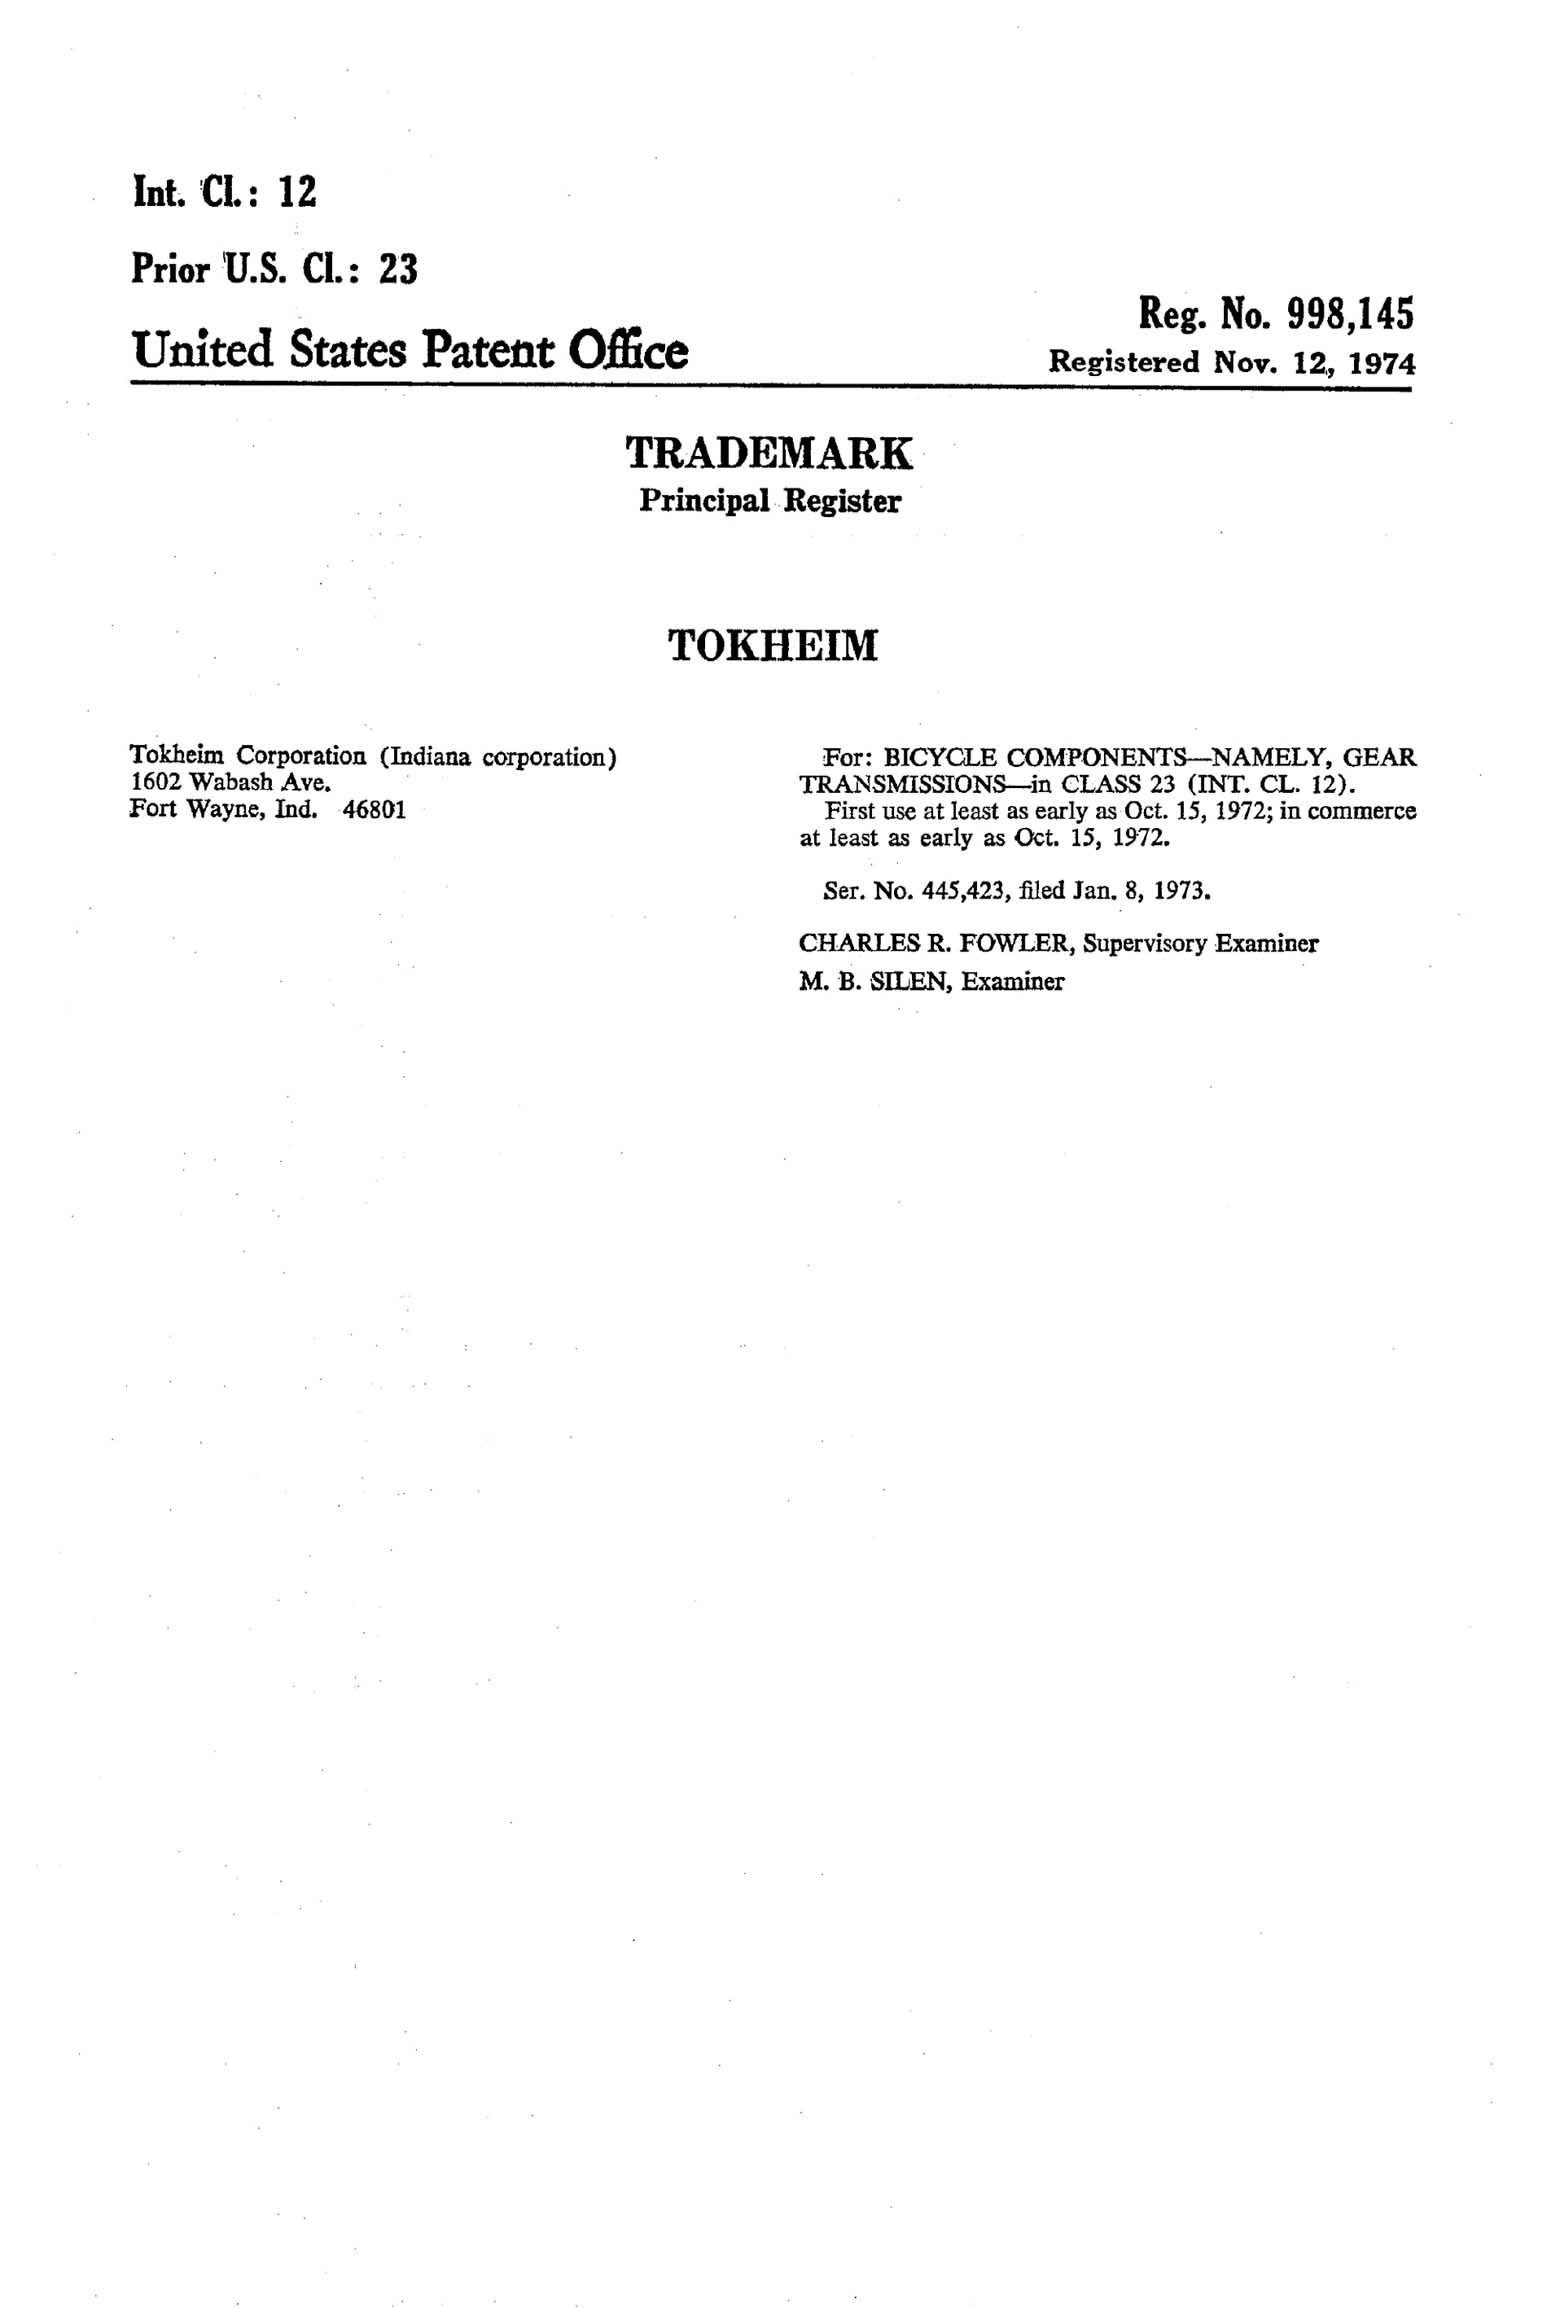 US Trademark 998,145 - Tokheim main image